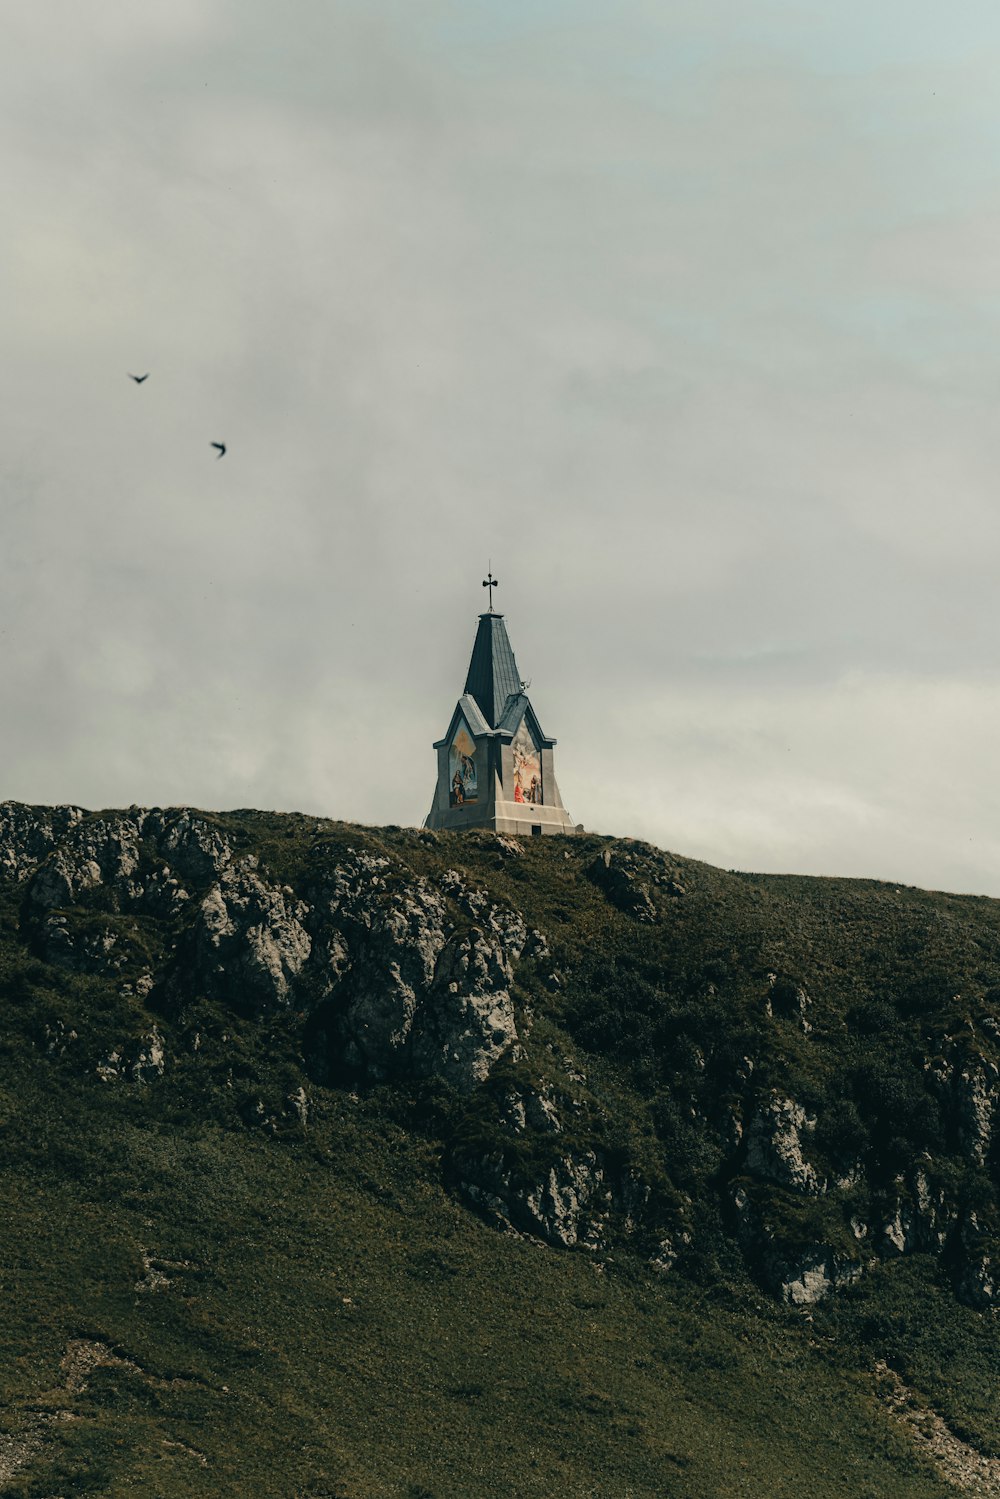 Une église sur une colline avec un oiseau volant